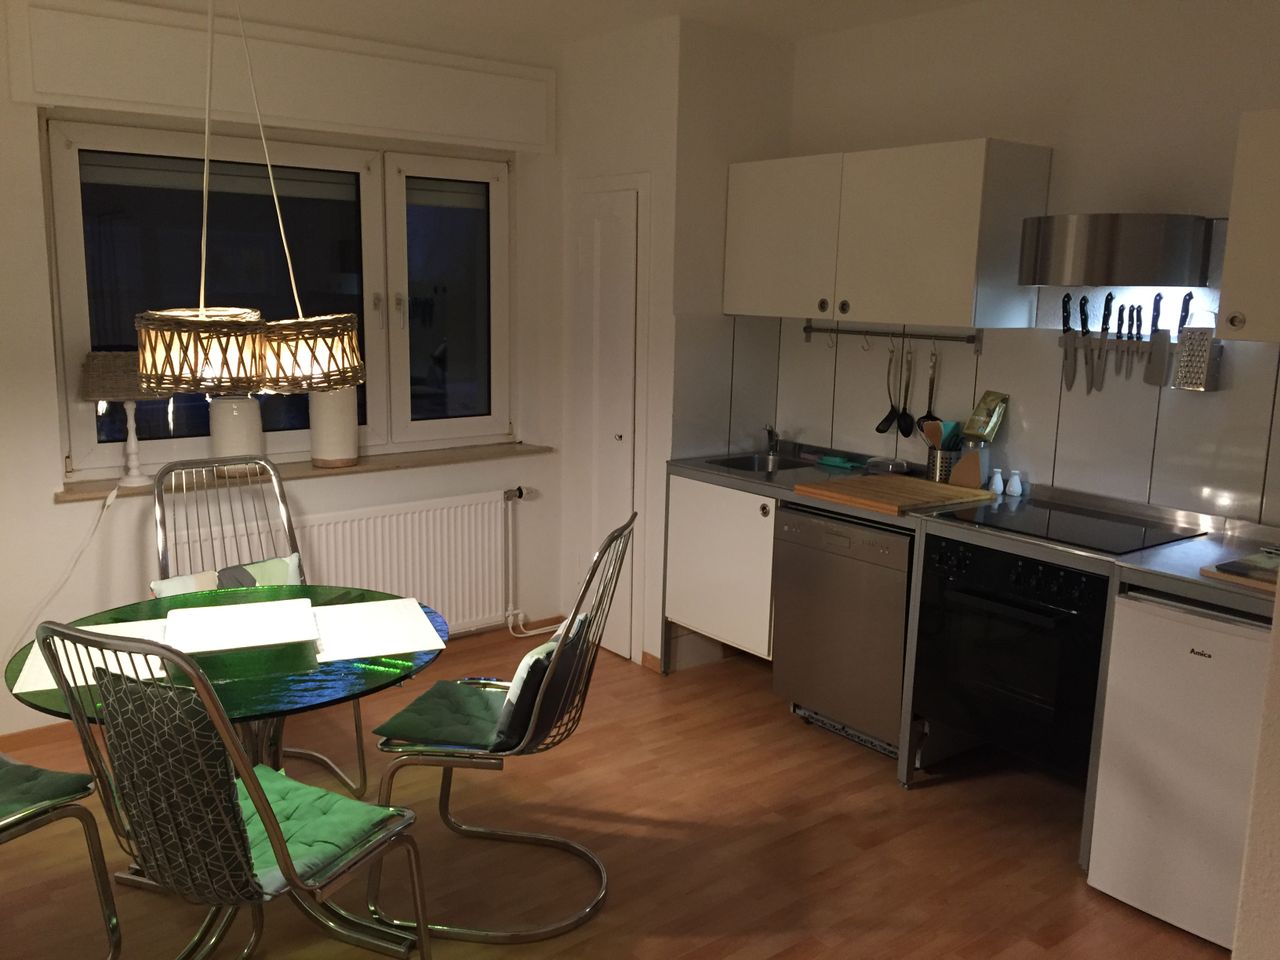 Fantastic apartment in Dortmund